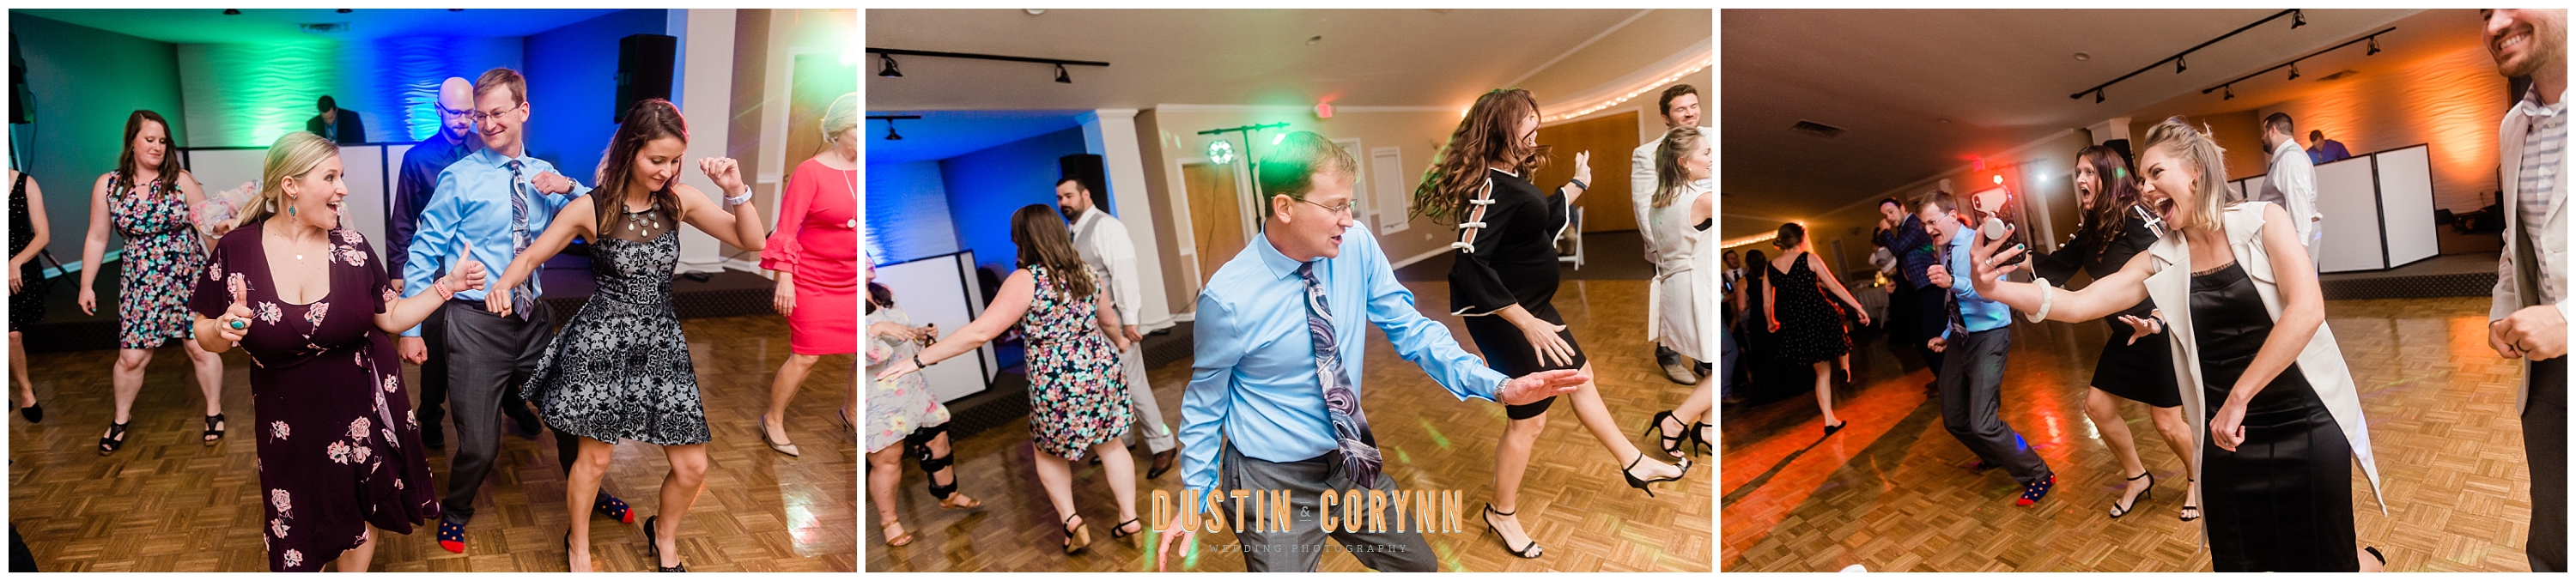 Dancing at Palomino Ballroom Wedding Reception